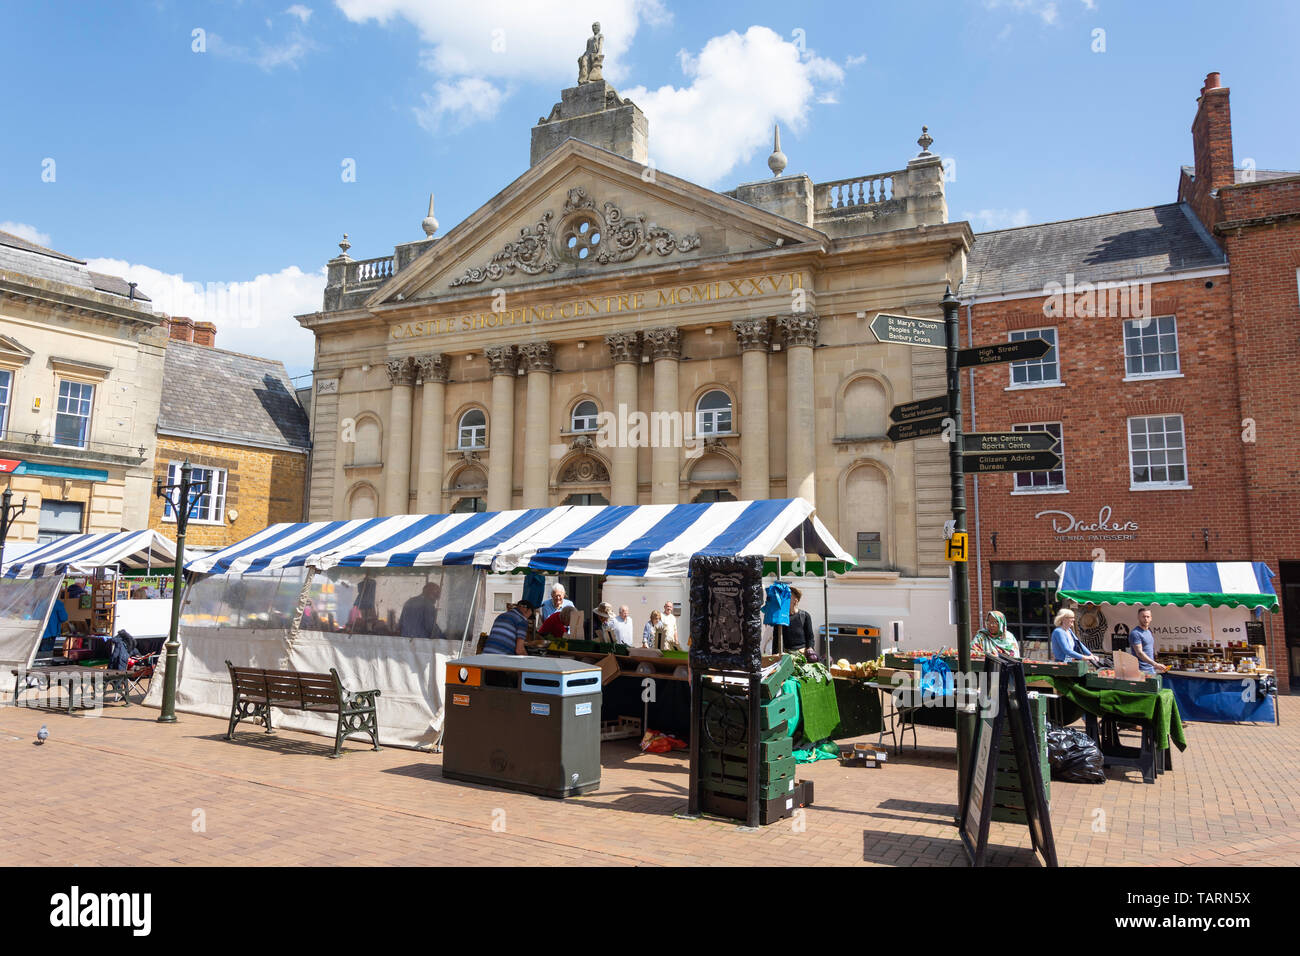 Bauernmarkt auf dem Marktplatz, Banbury, Oxfordshire, England, Vereinigtes Königreich Stockfoto